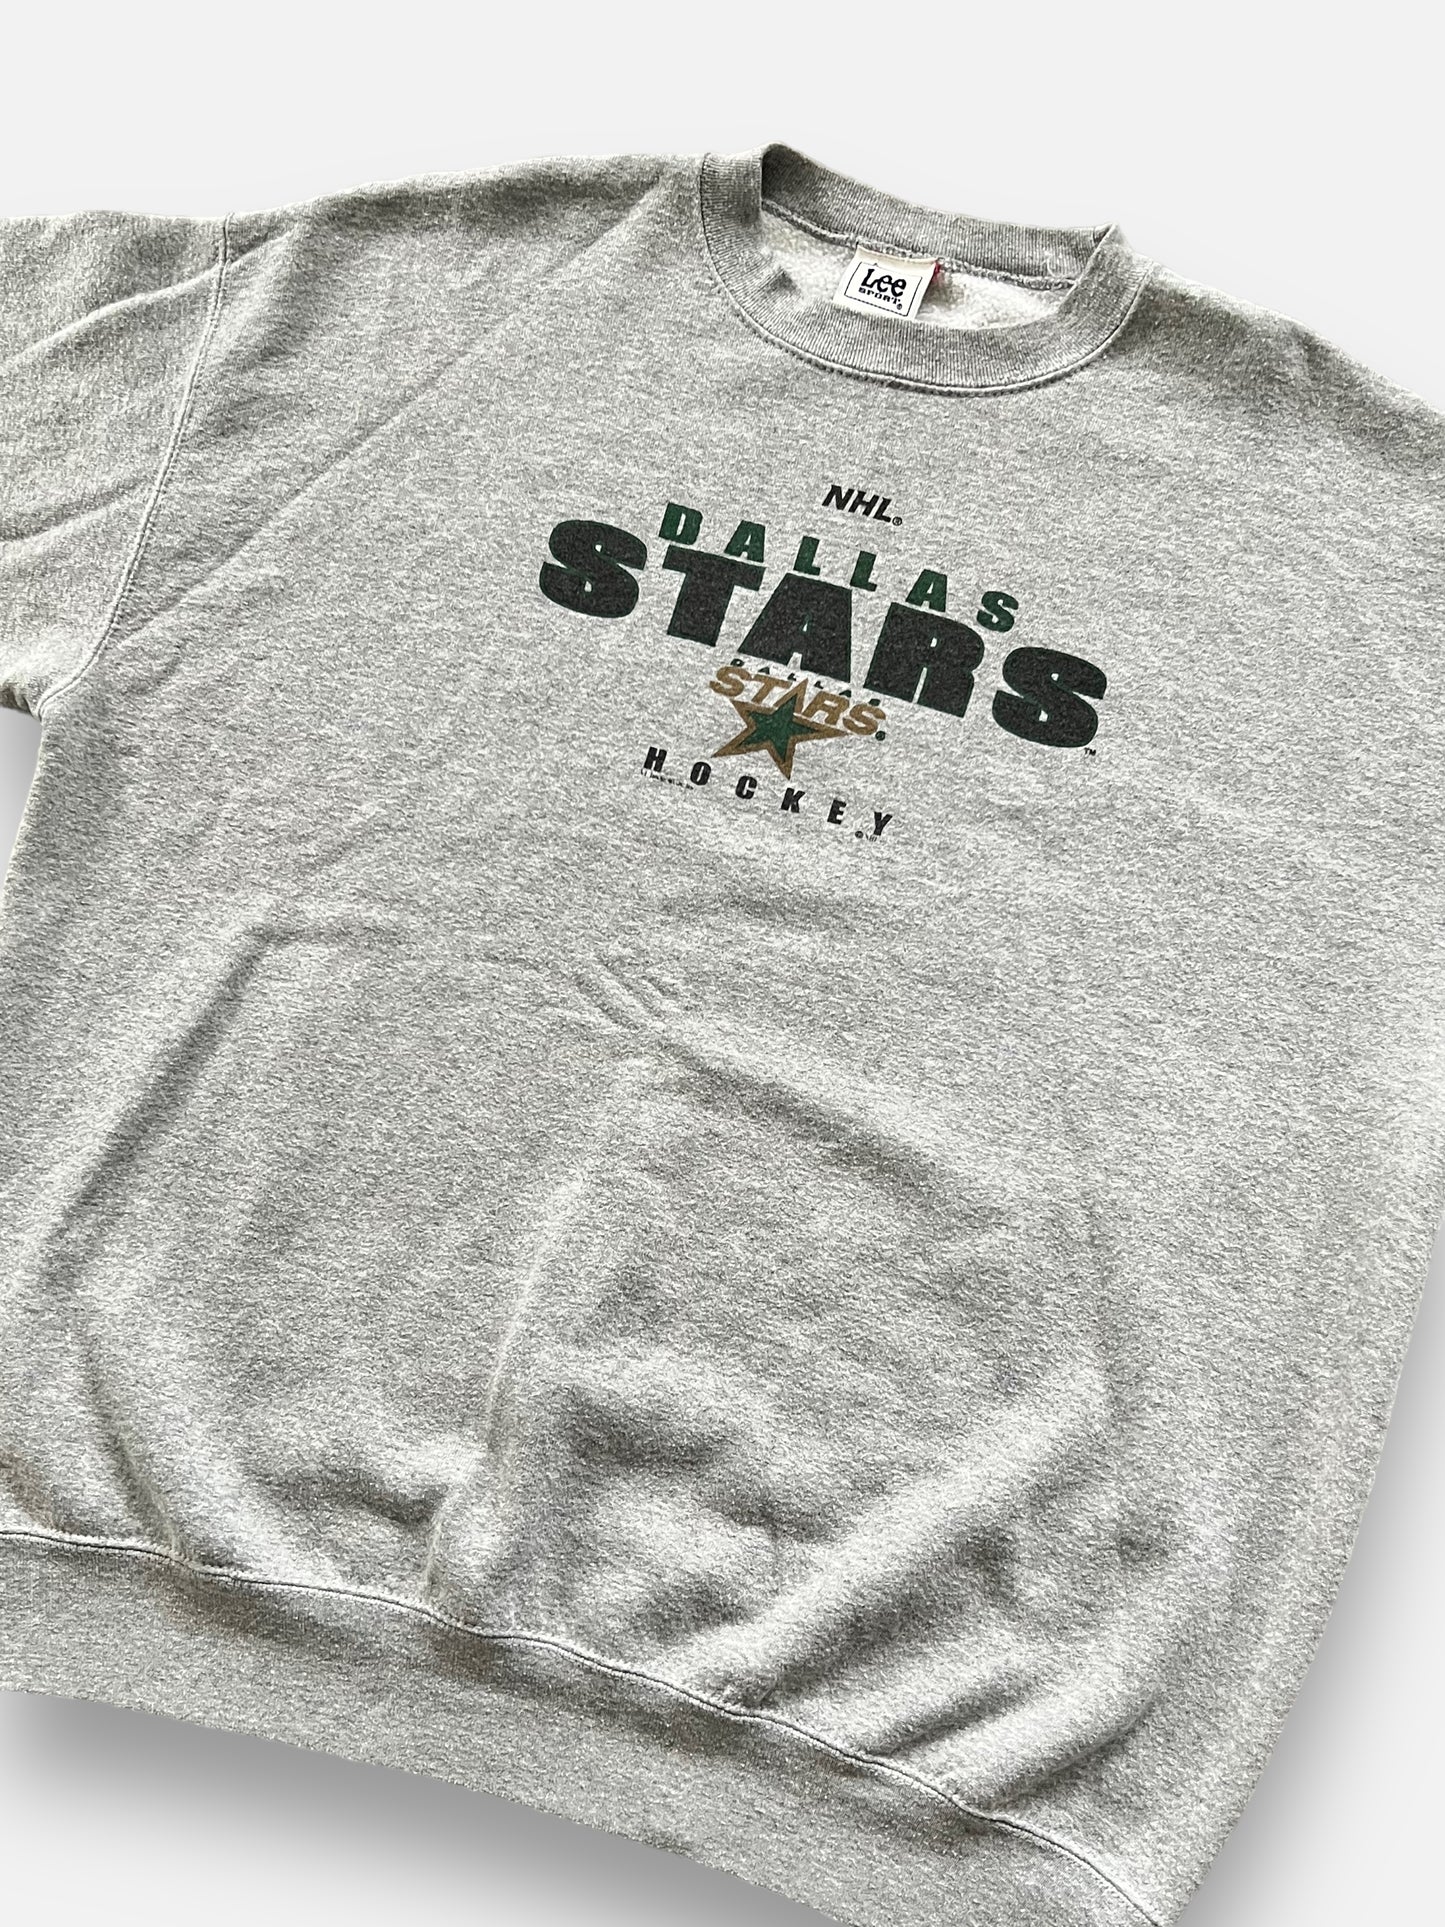 90's Dallas Stars Sweatshirt (XL)